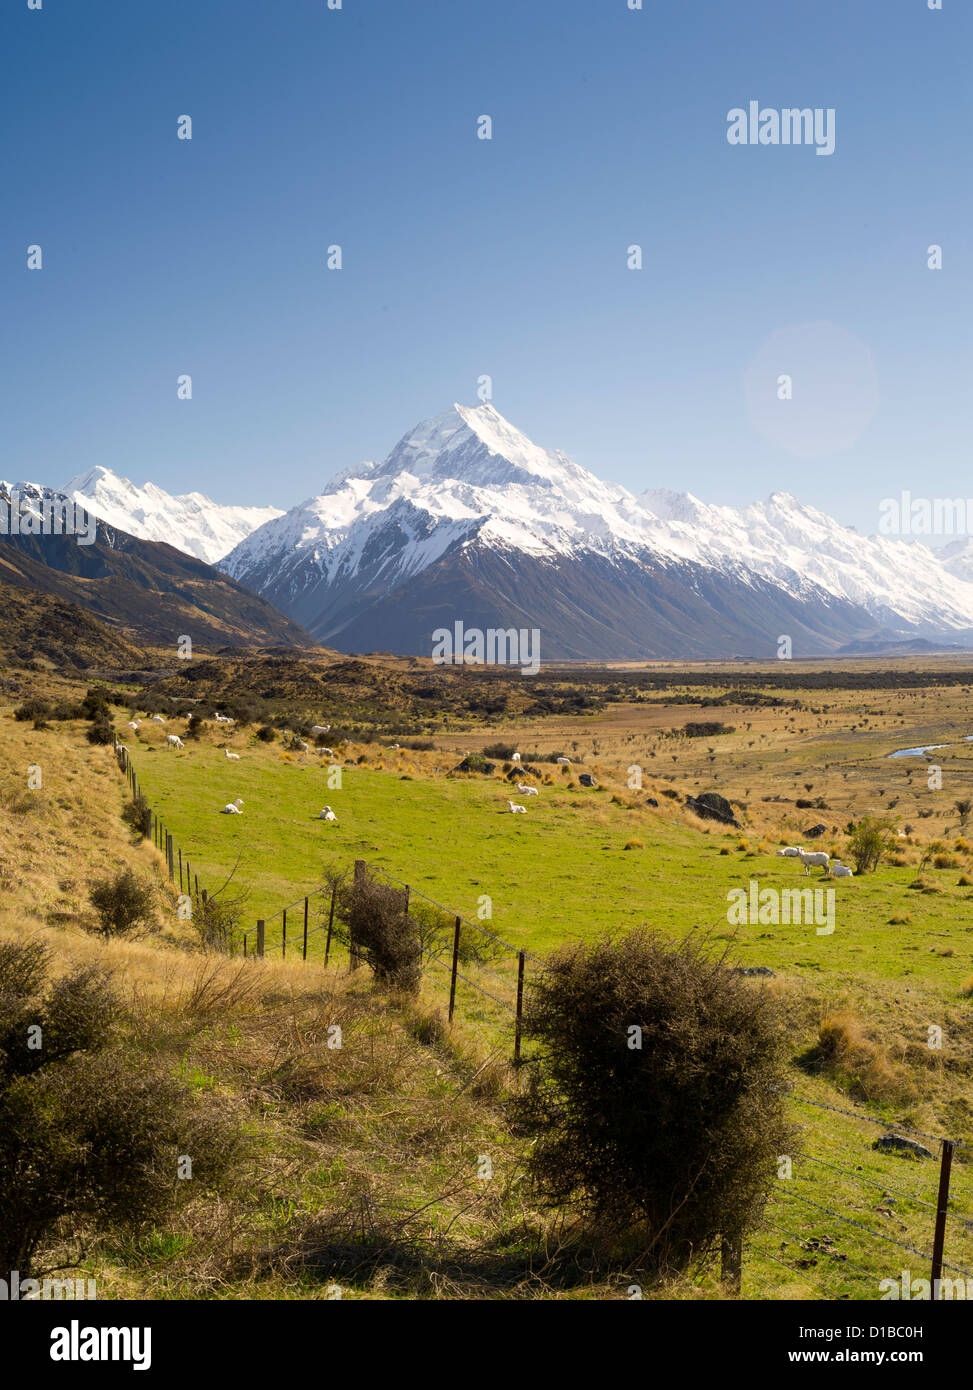 Eine Ikone Blick auf Neuseeland - Schafe auf der Weide und Aoraki/Mt. Cook im Hintergrund. aoraki ist nz höchste Berg Stockfoto